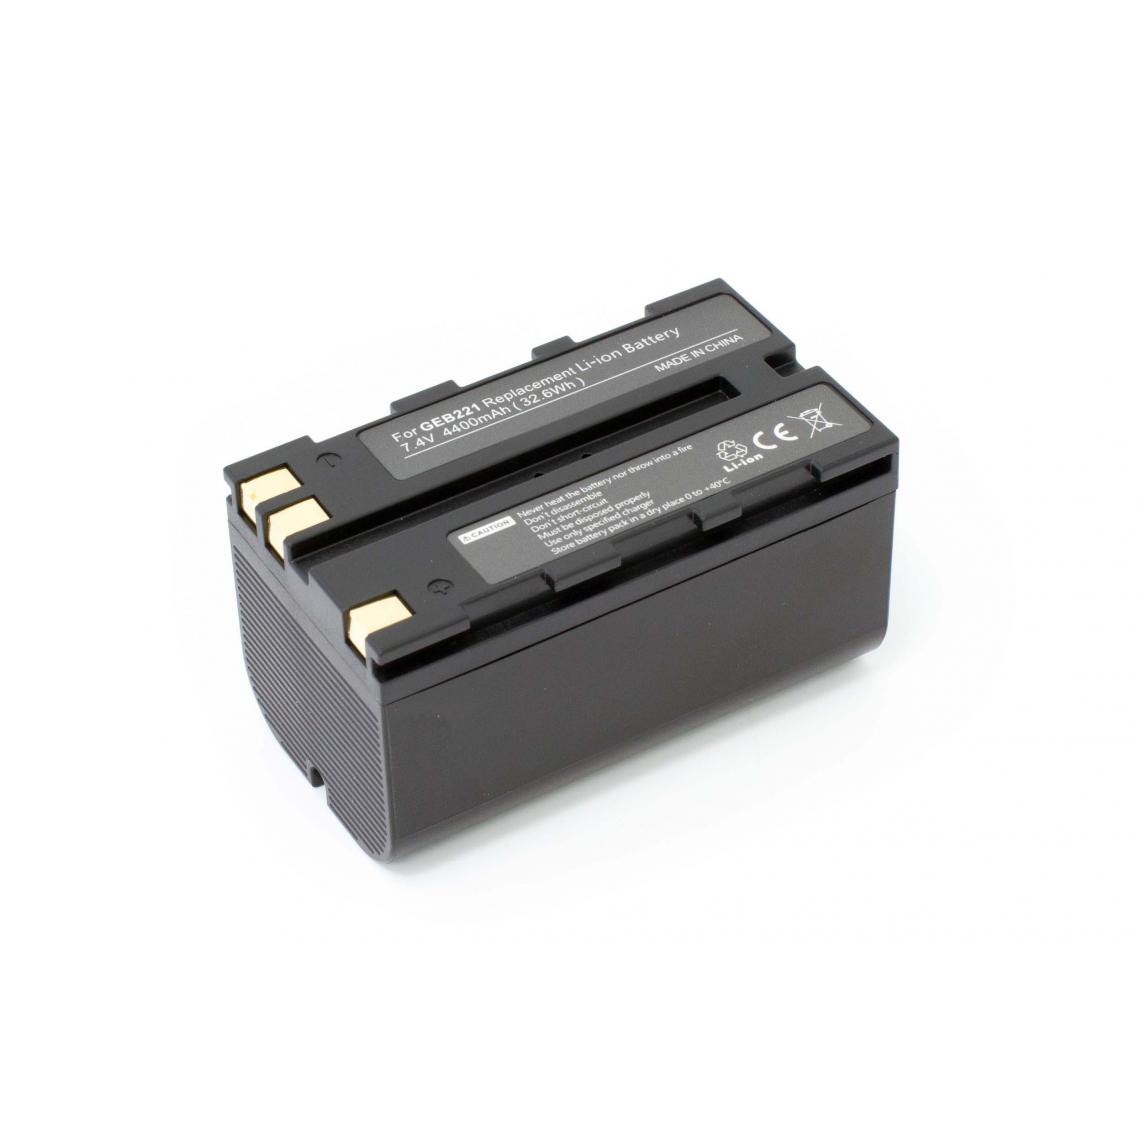 Vhbw - vhbw batterie remplace Geomax ZBA400 pour appareil photo DSLR (4400mAh, 7,4V, Li-Ion) - Piles rechargeables